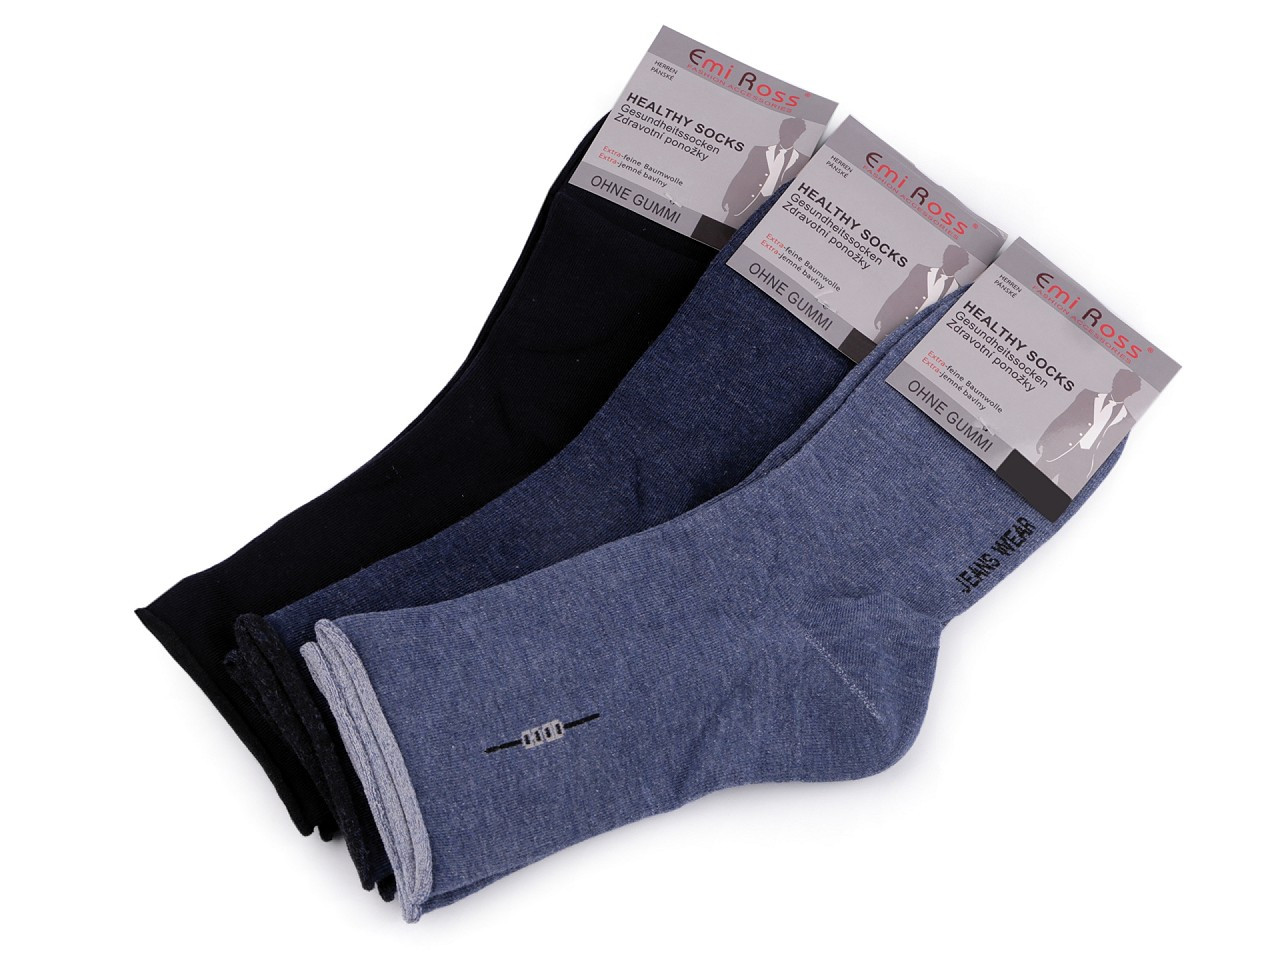 Pánské bavlněné ponožky se zdravotním lemem Emi Ross, barva 2 (vel. 43-46) mix